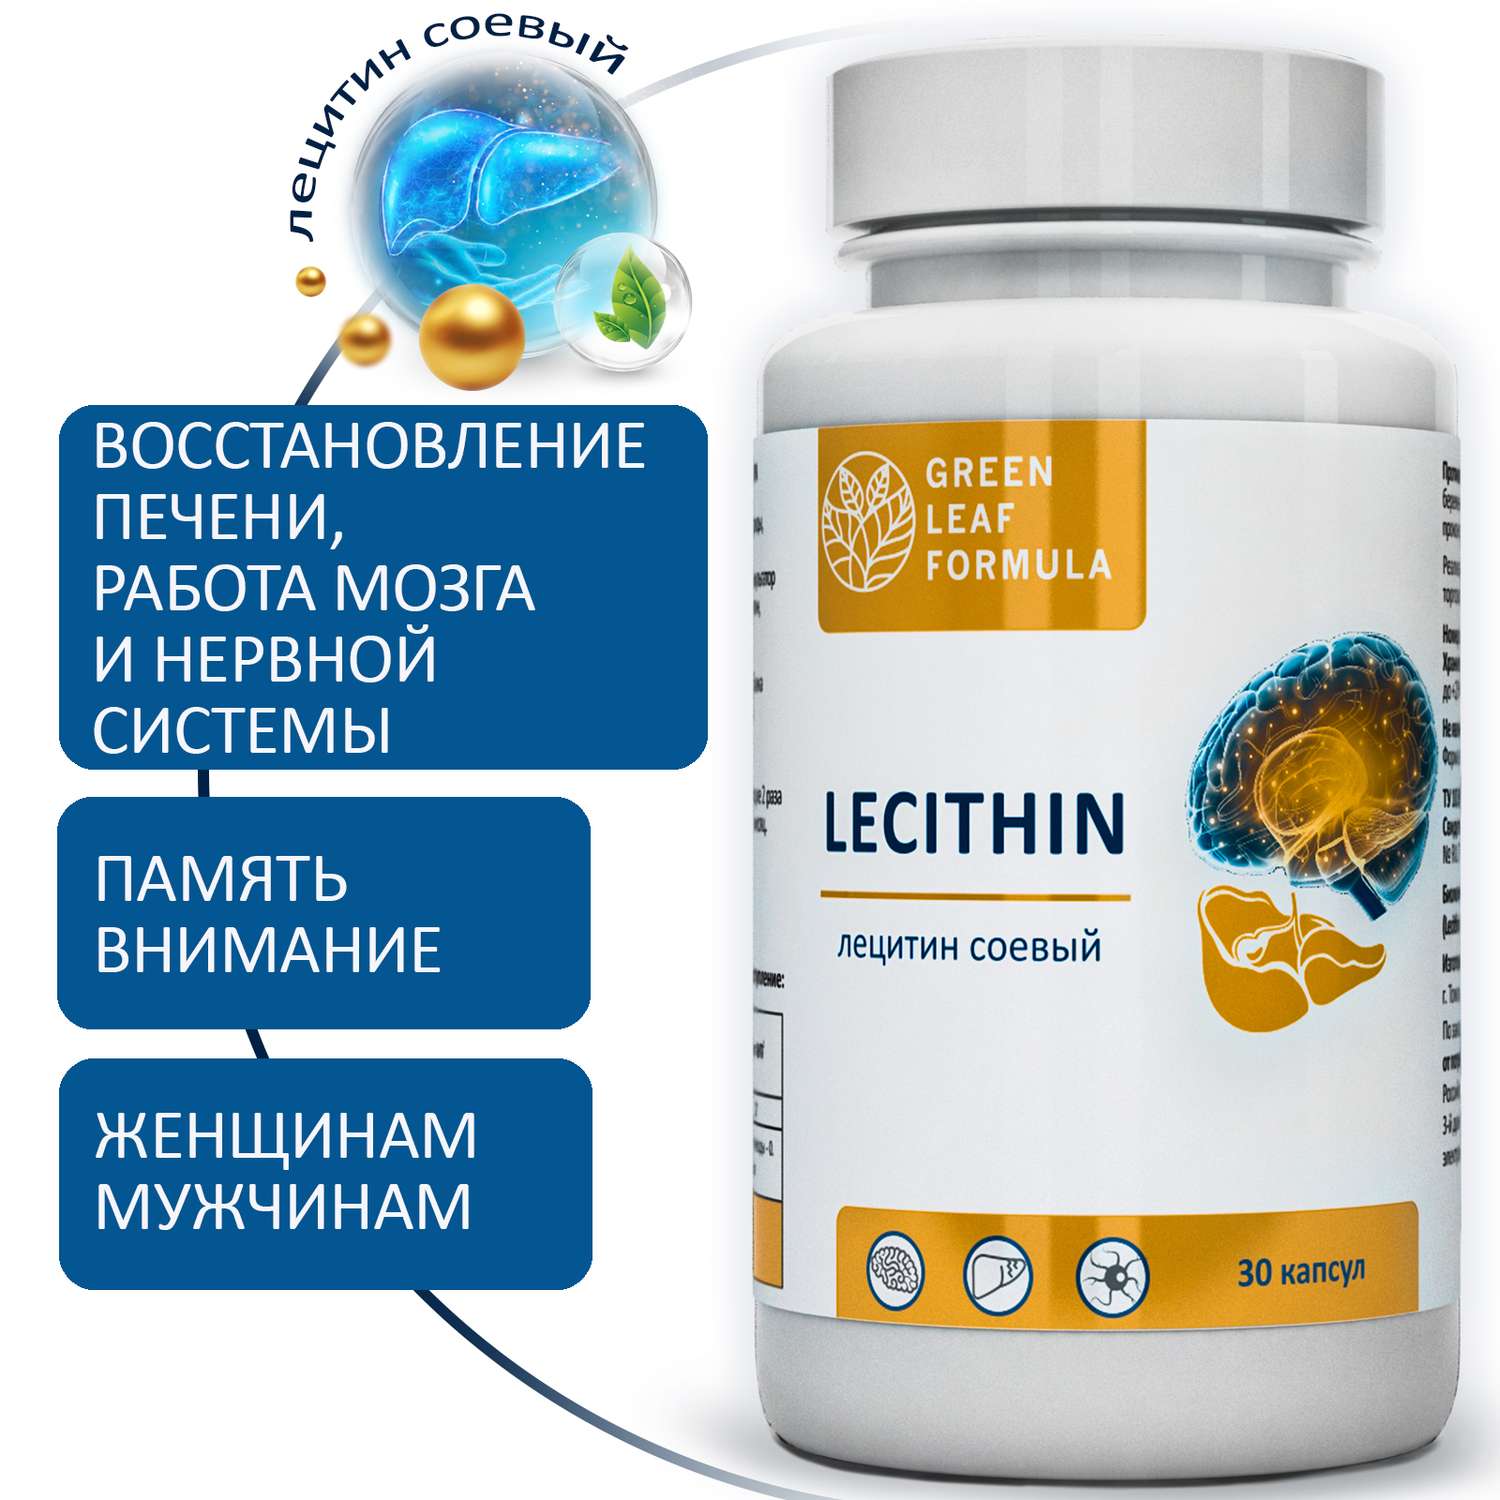 Набор Витамины для мозга Green Leaf Formula триптофан лецитин соевый для нервной системы фосфолипиды 2 банки - фото 10